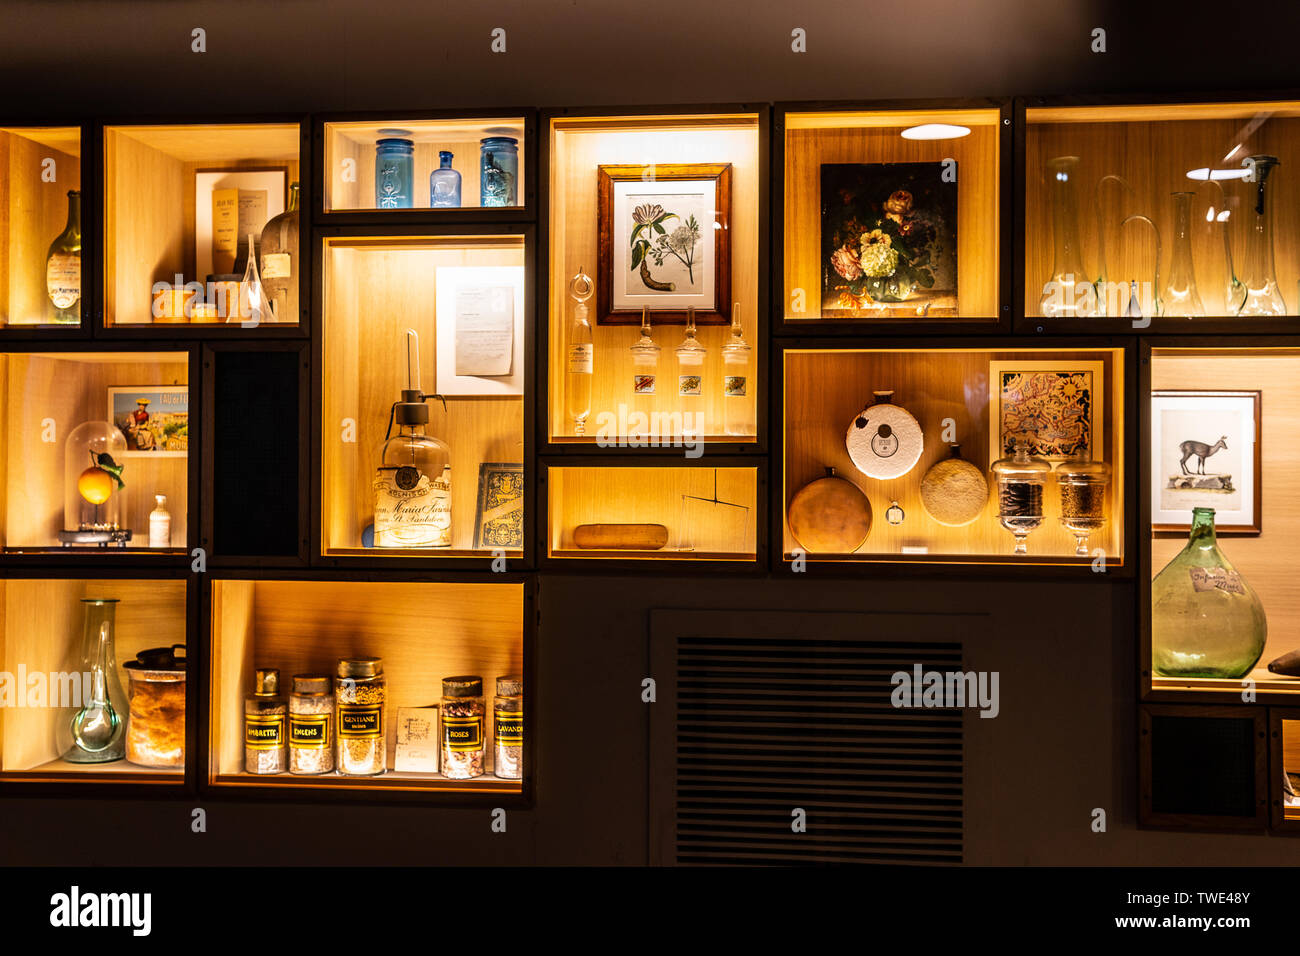 Paris, France, Octobre 09, 2018 : Musée du parfum Fragonard, La Maison de vente de produits de parfumerie Fragonard, exposition, composants, histoire de parfum Banque D'Images